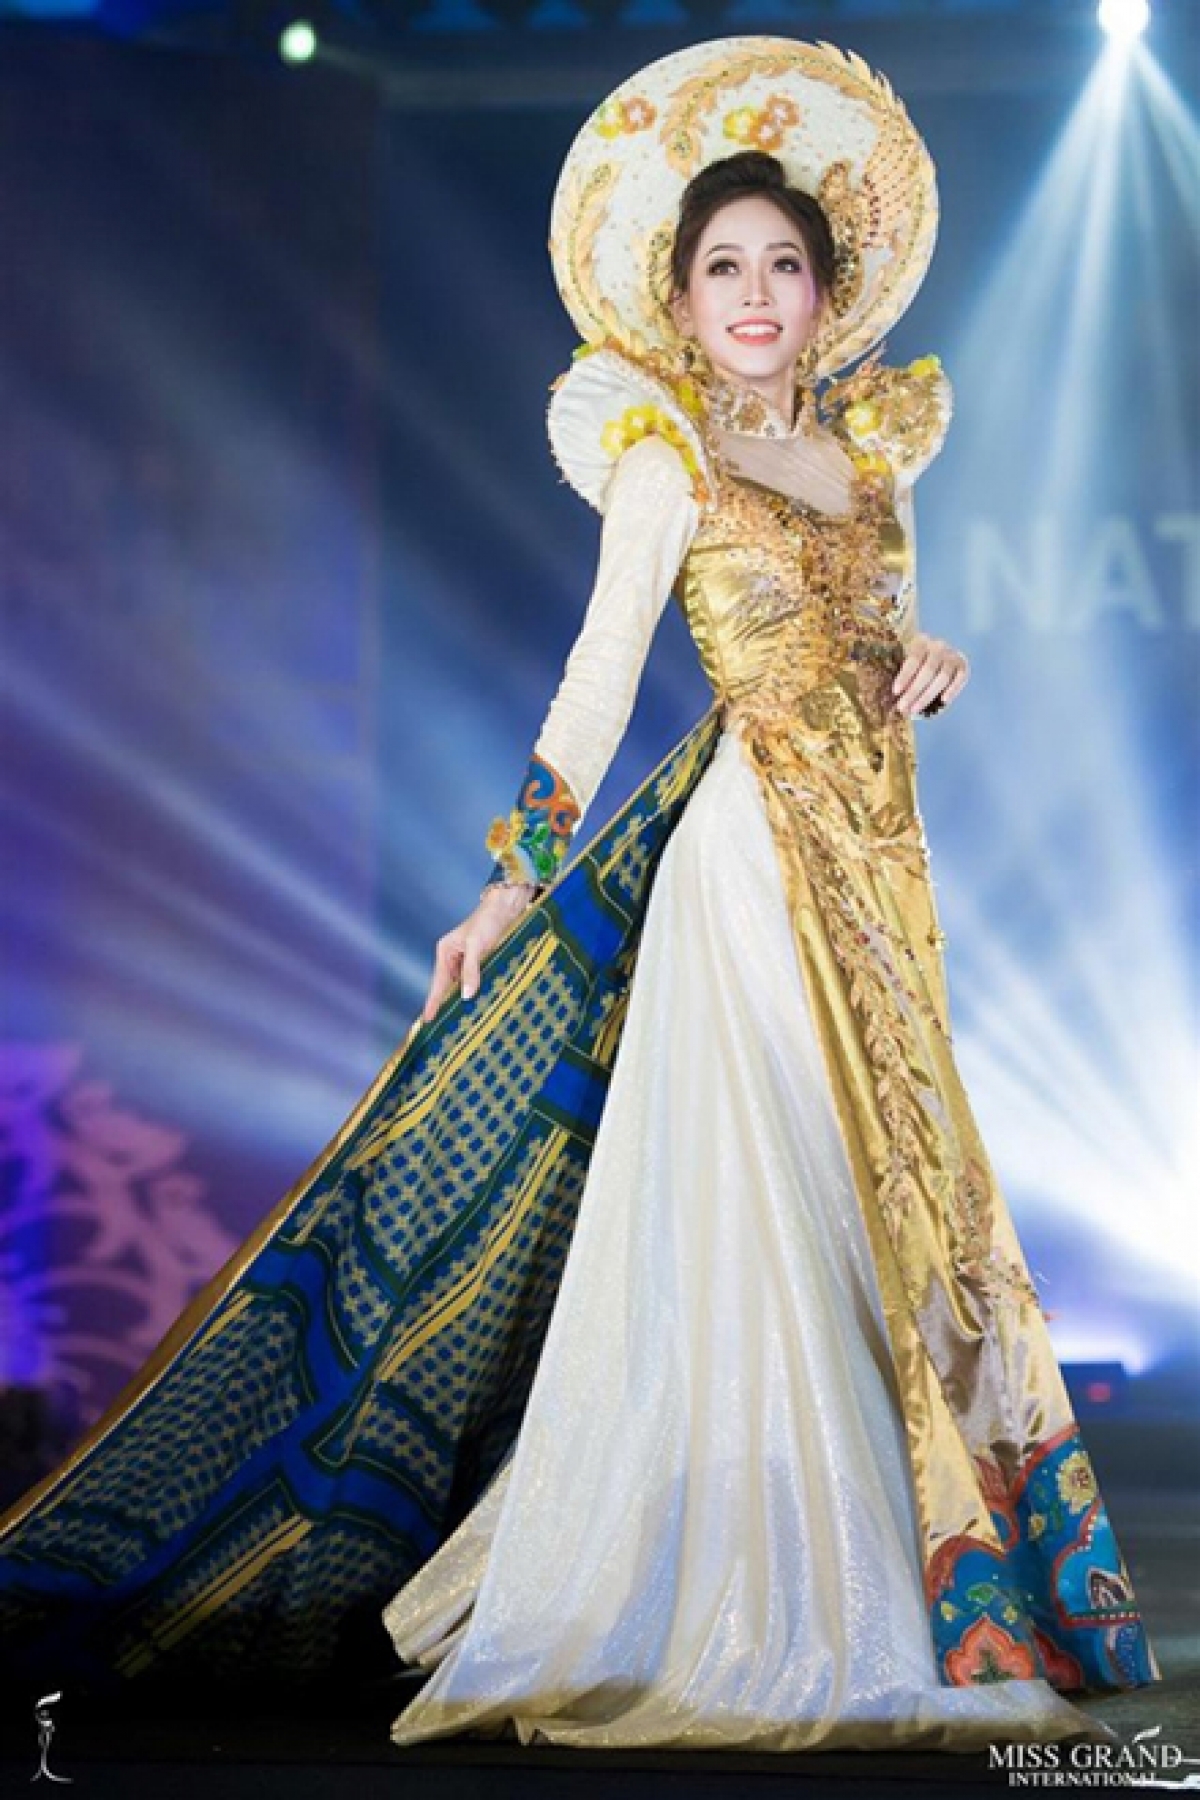 Ấn tượng trang phục dân tộc của các đại diện Việt tại Miss Grand International - Ảnh 6.